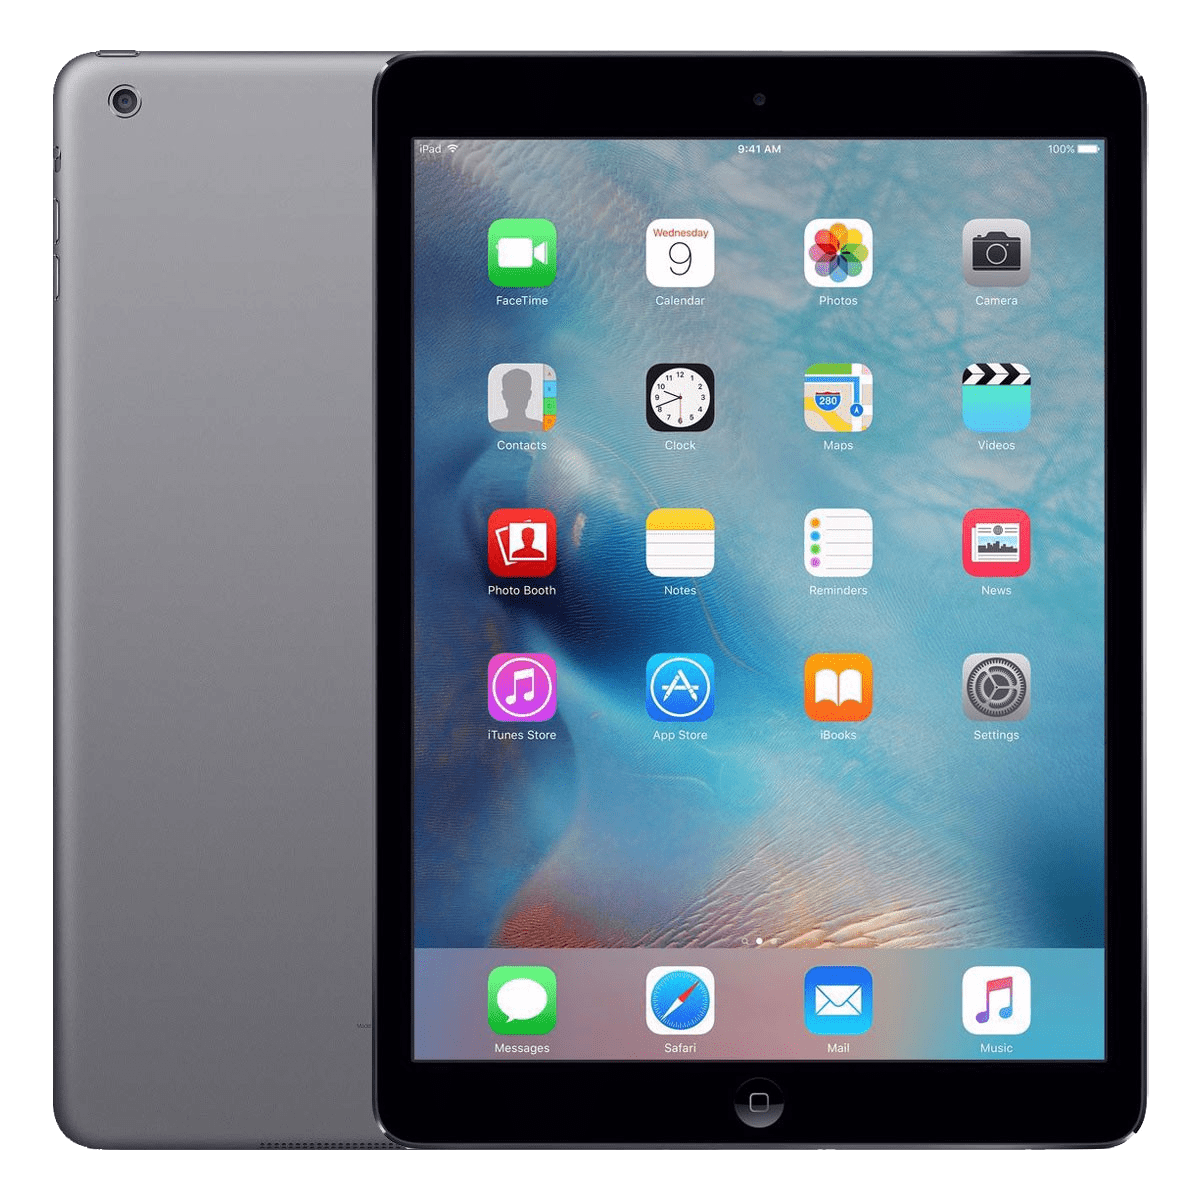 Apple iPad Air 1st Gen (2013) (Cellular & Wi-Fi)